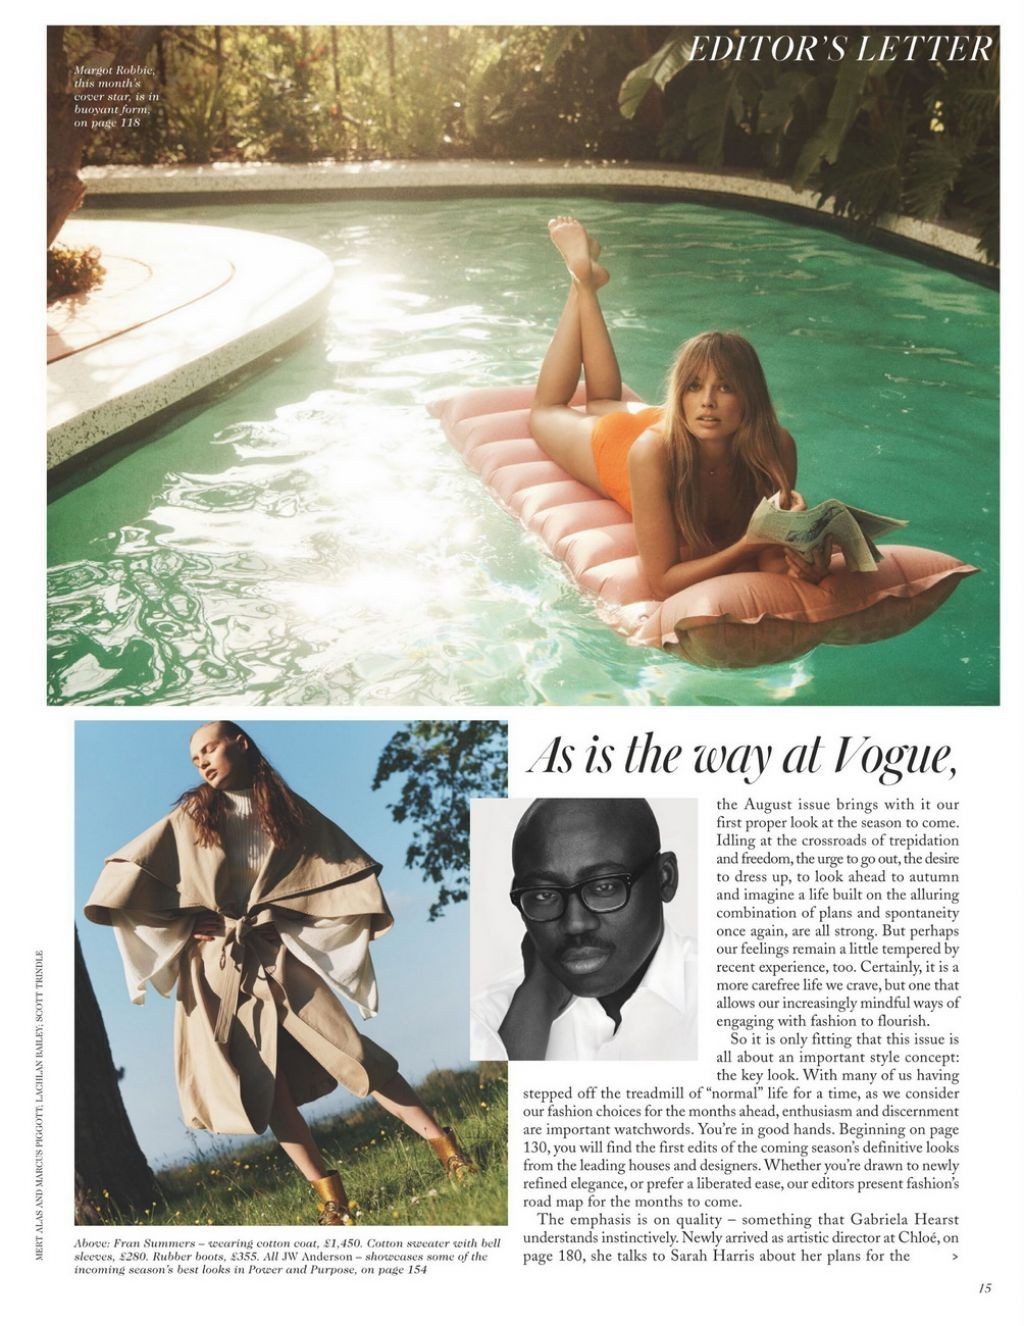 Margot Robbie Sexy – Vogue Magazine UK (25 Photos)